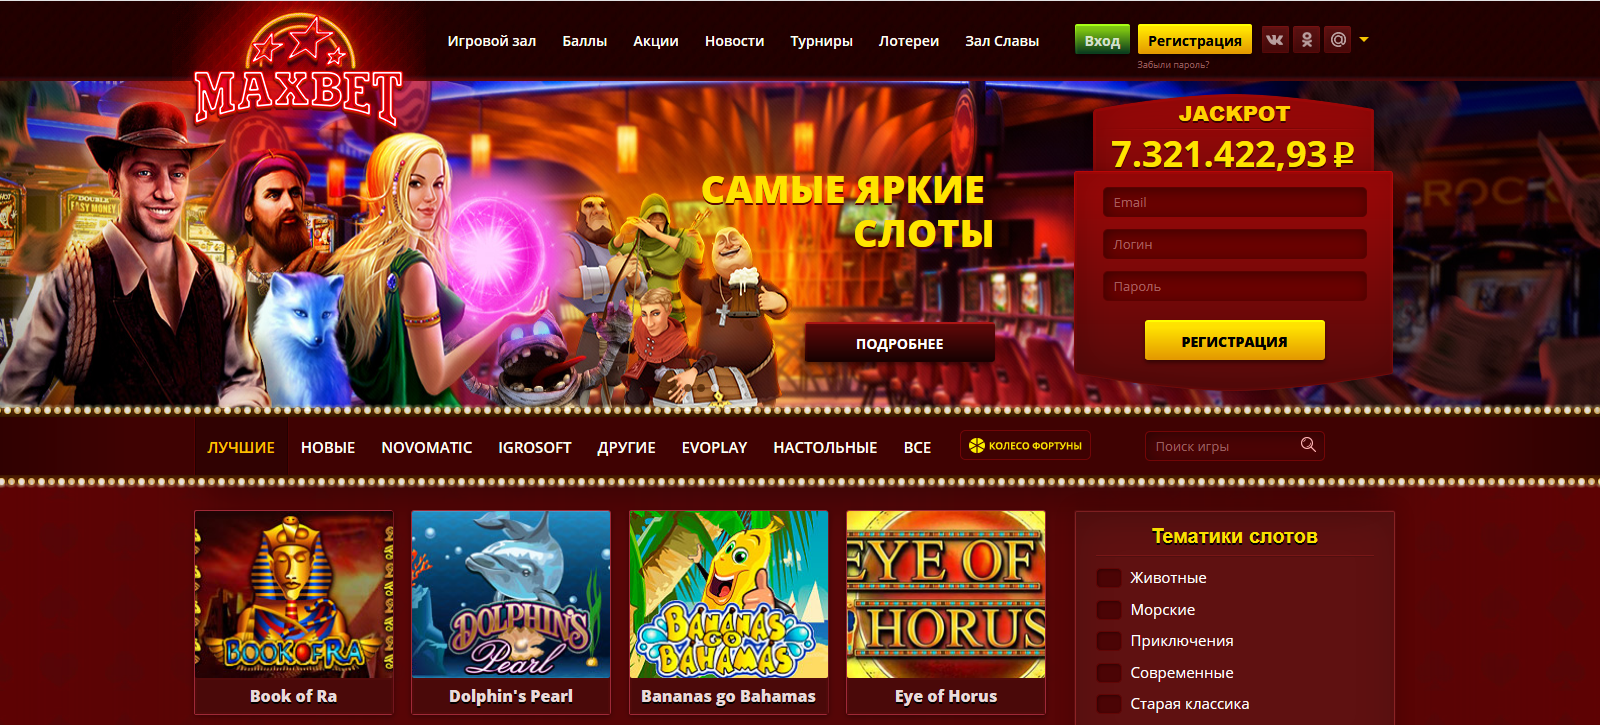 Игровые автоматы казино максбет онлайн зайти онлайн казино вулкан